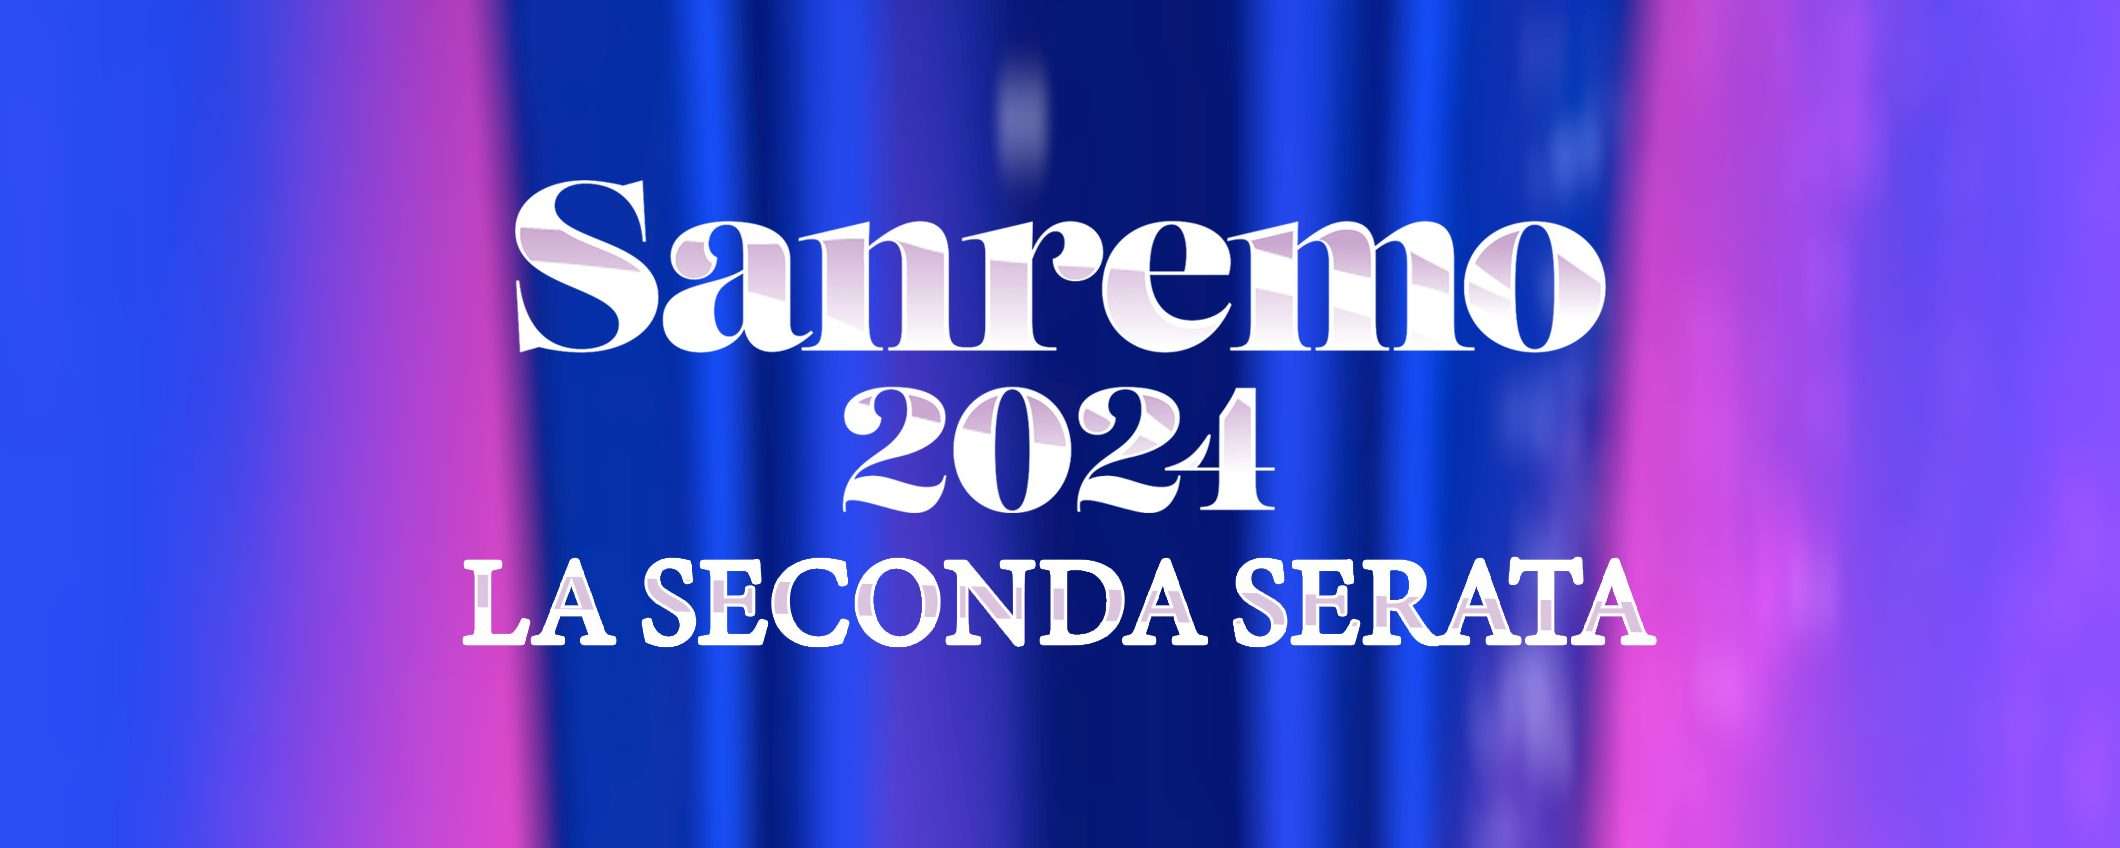 John Travolta a Sanremo: guardalo in streaming dall'estero